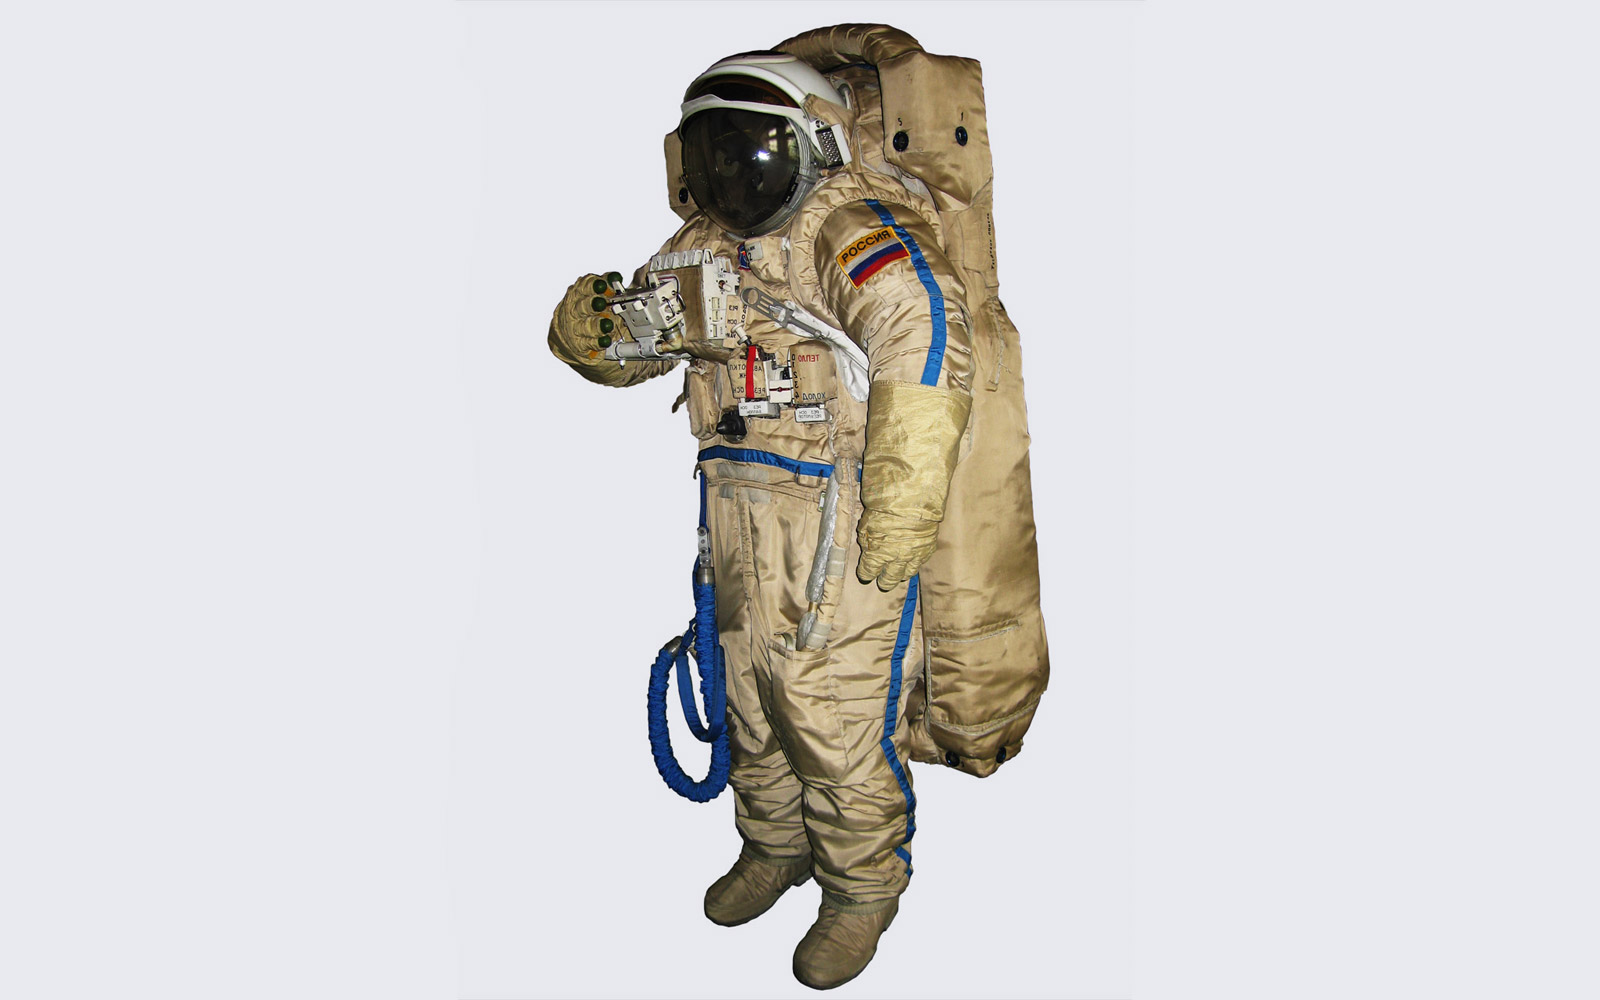 Со скафандром. Скафандр Орлан. Скафандр Космонавта. Космический скафандр Орлан. Орлан костюм Космонавта.